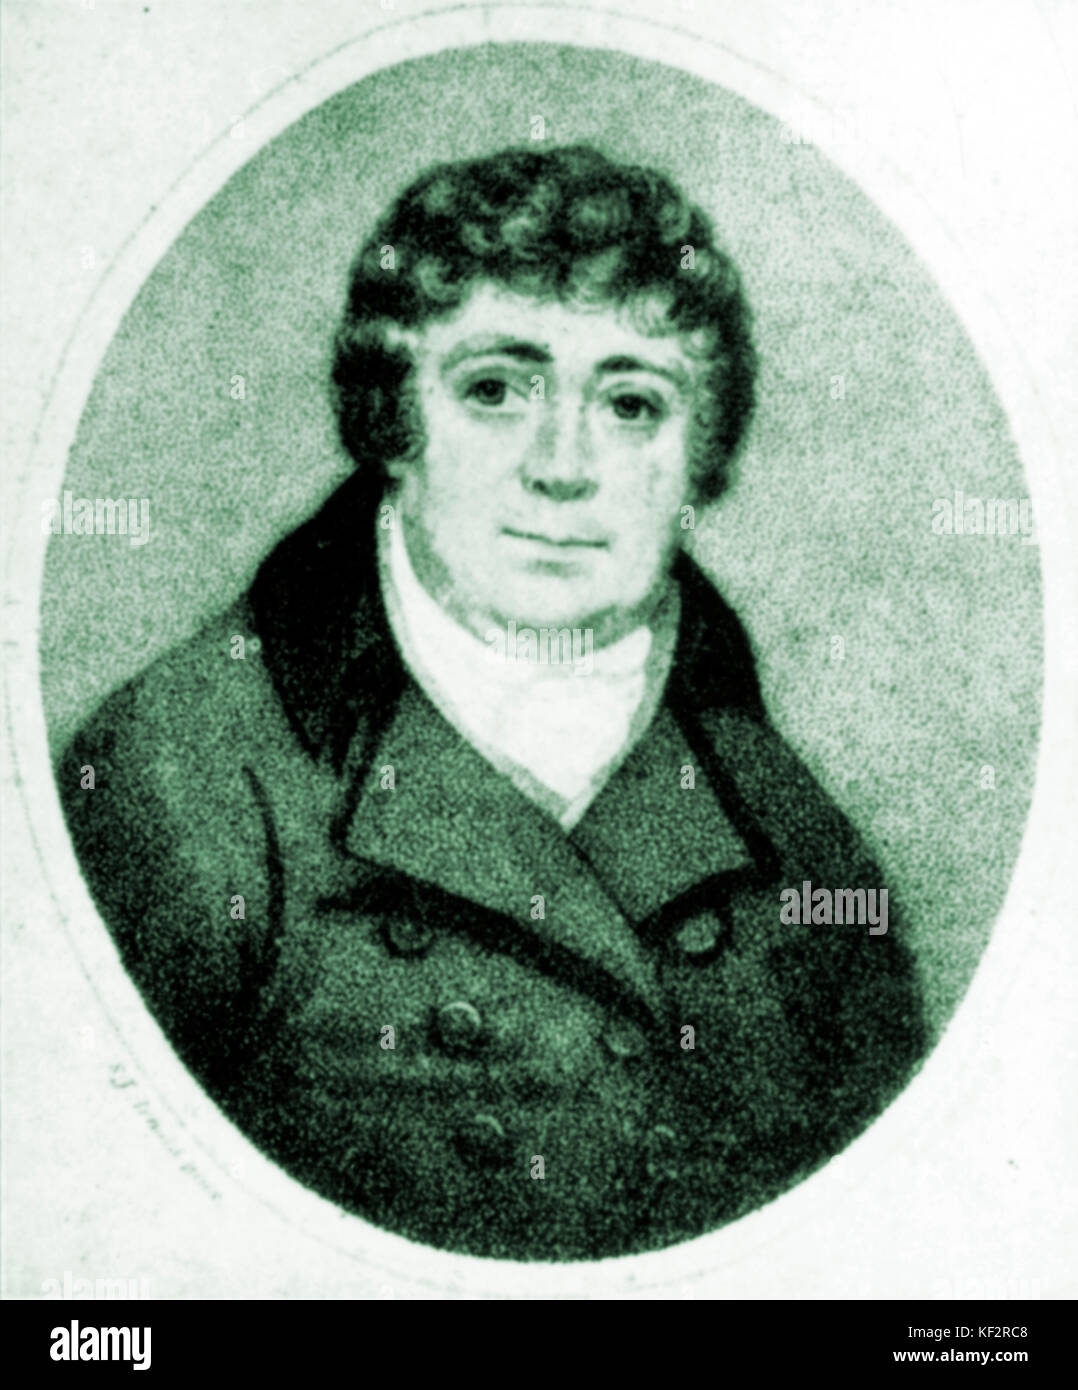 ARNOLD, Samuel inglese organista e compositore operistico, 1740-1802. A cura di Handel opere del ritratto da Ridley, 1813, dopo J Arnold Foto Stock